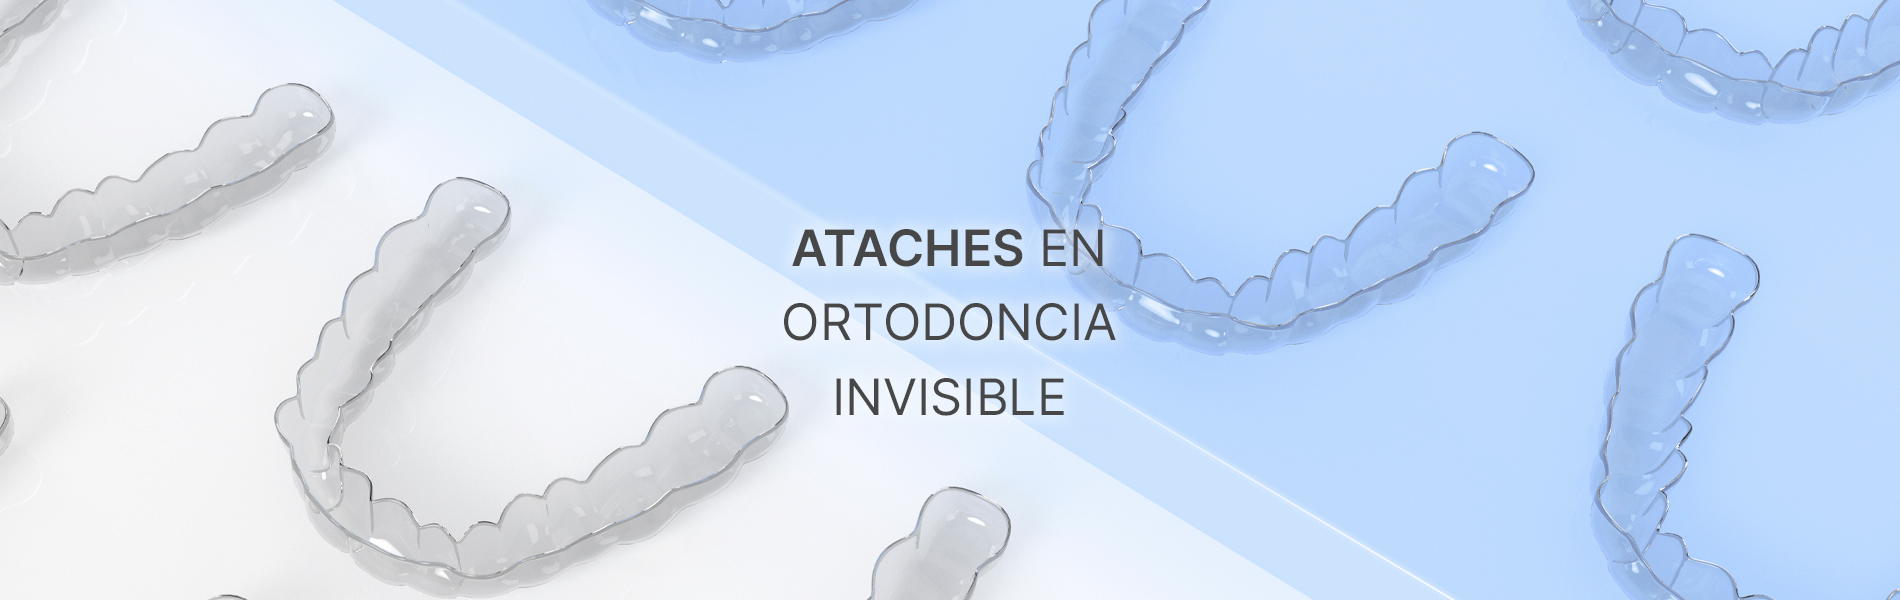 ataches en ortodoncia invisible